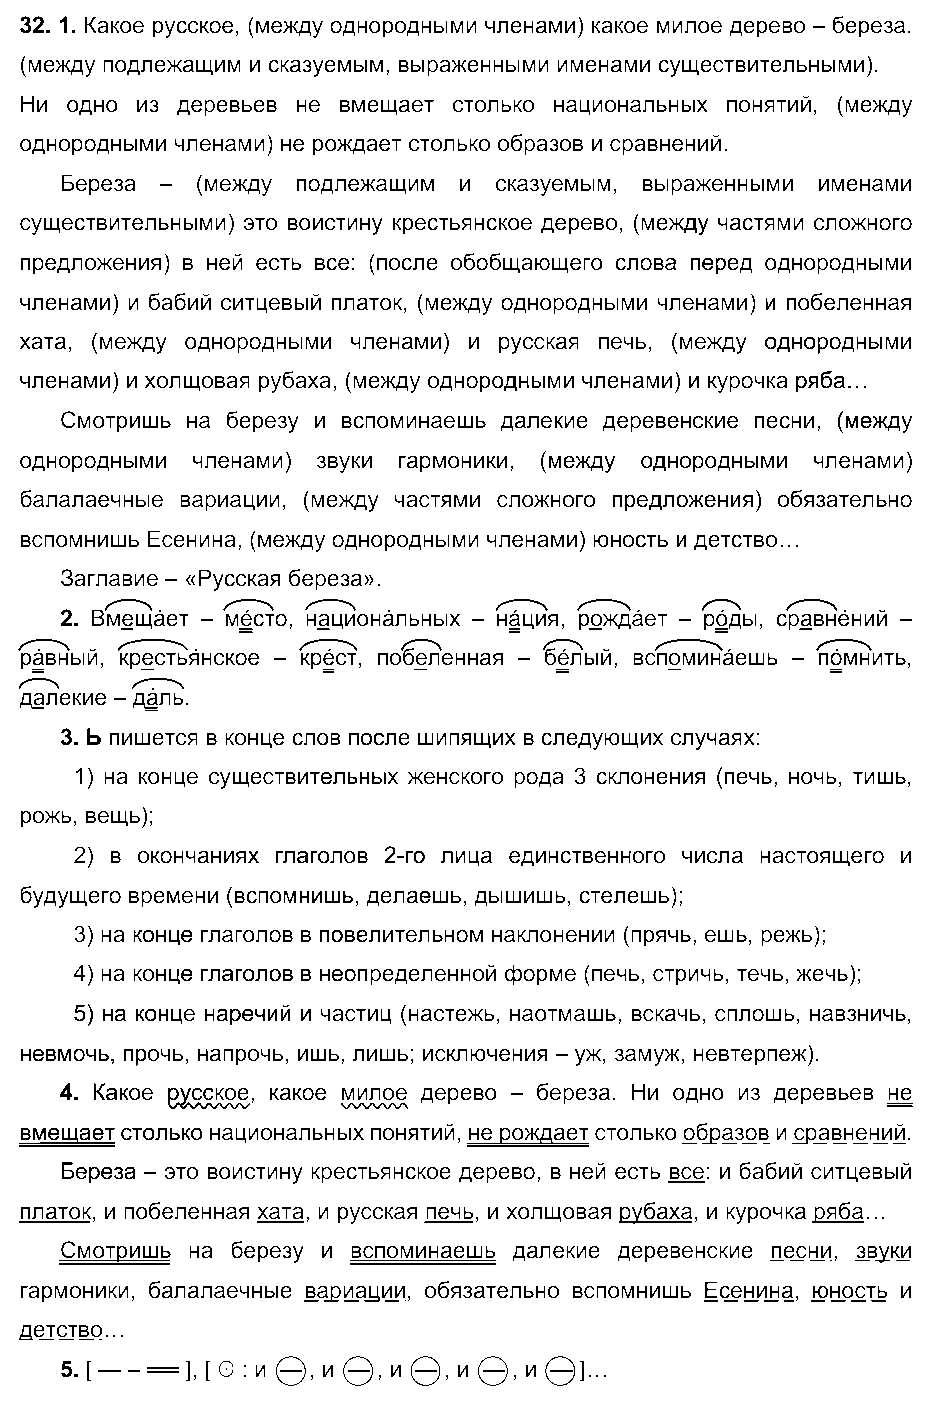 ГДЗ Русский язык 6 класс - 32